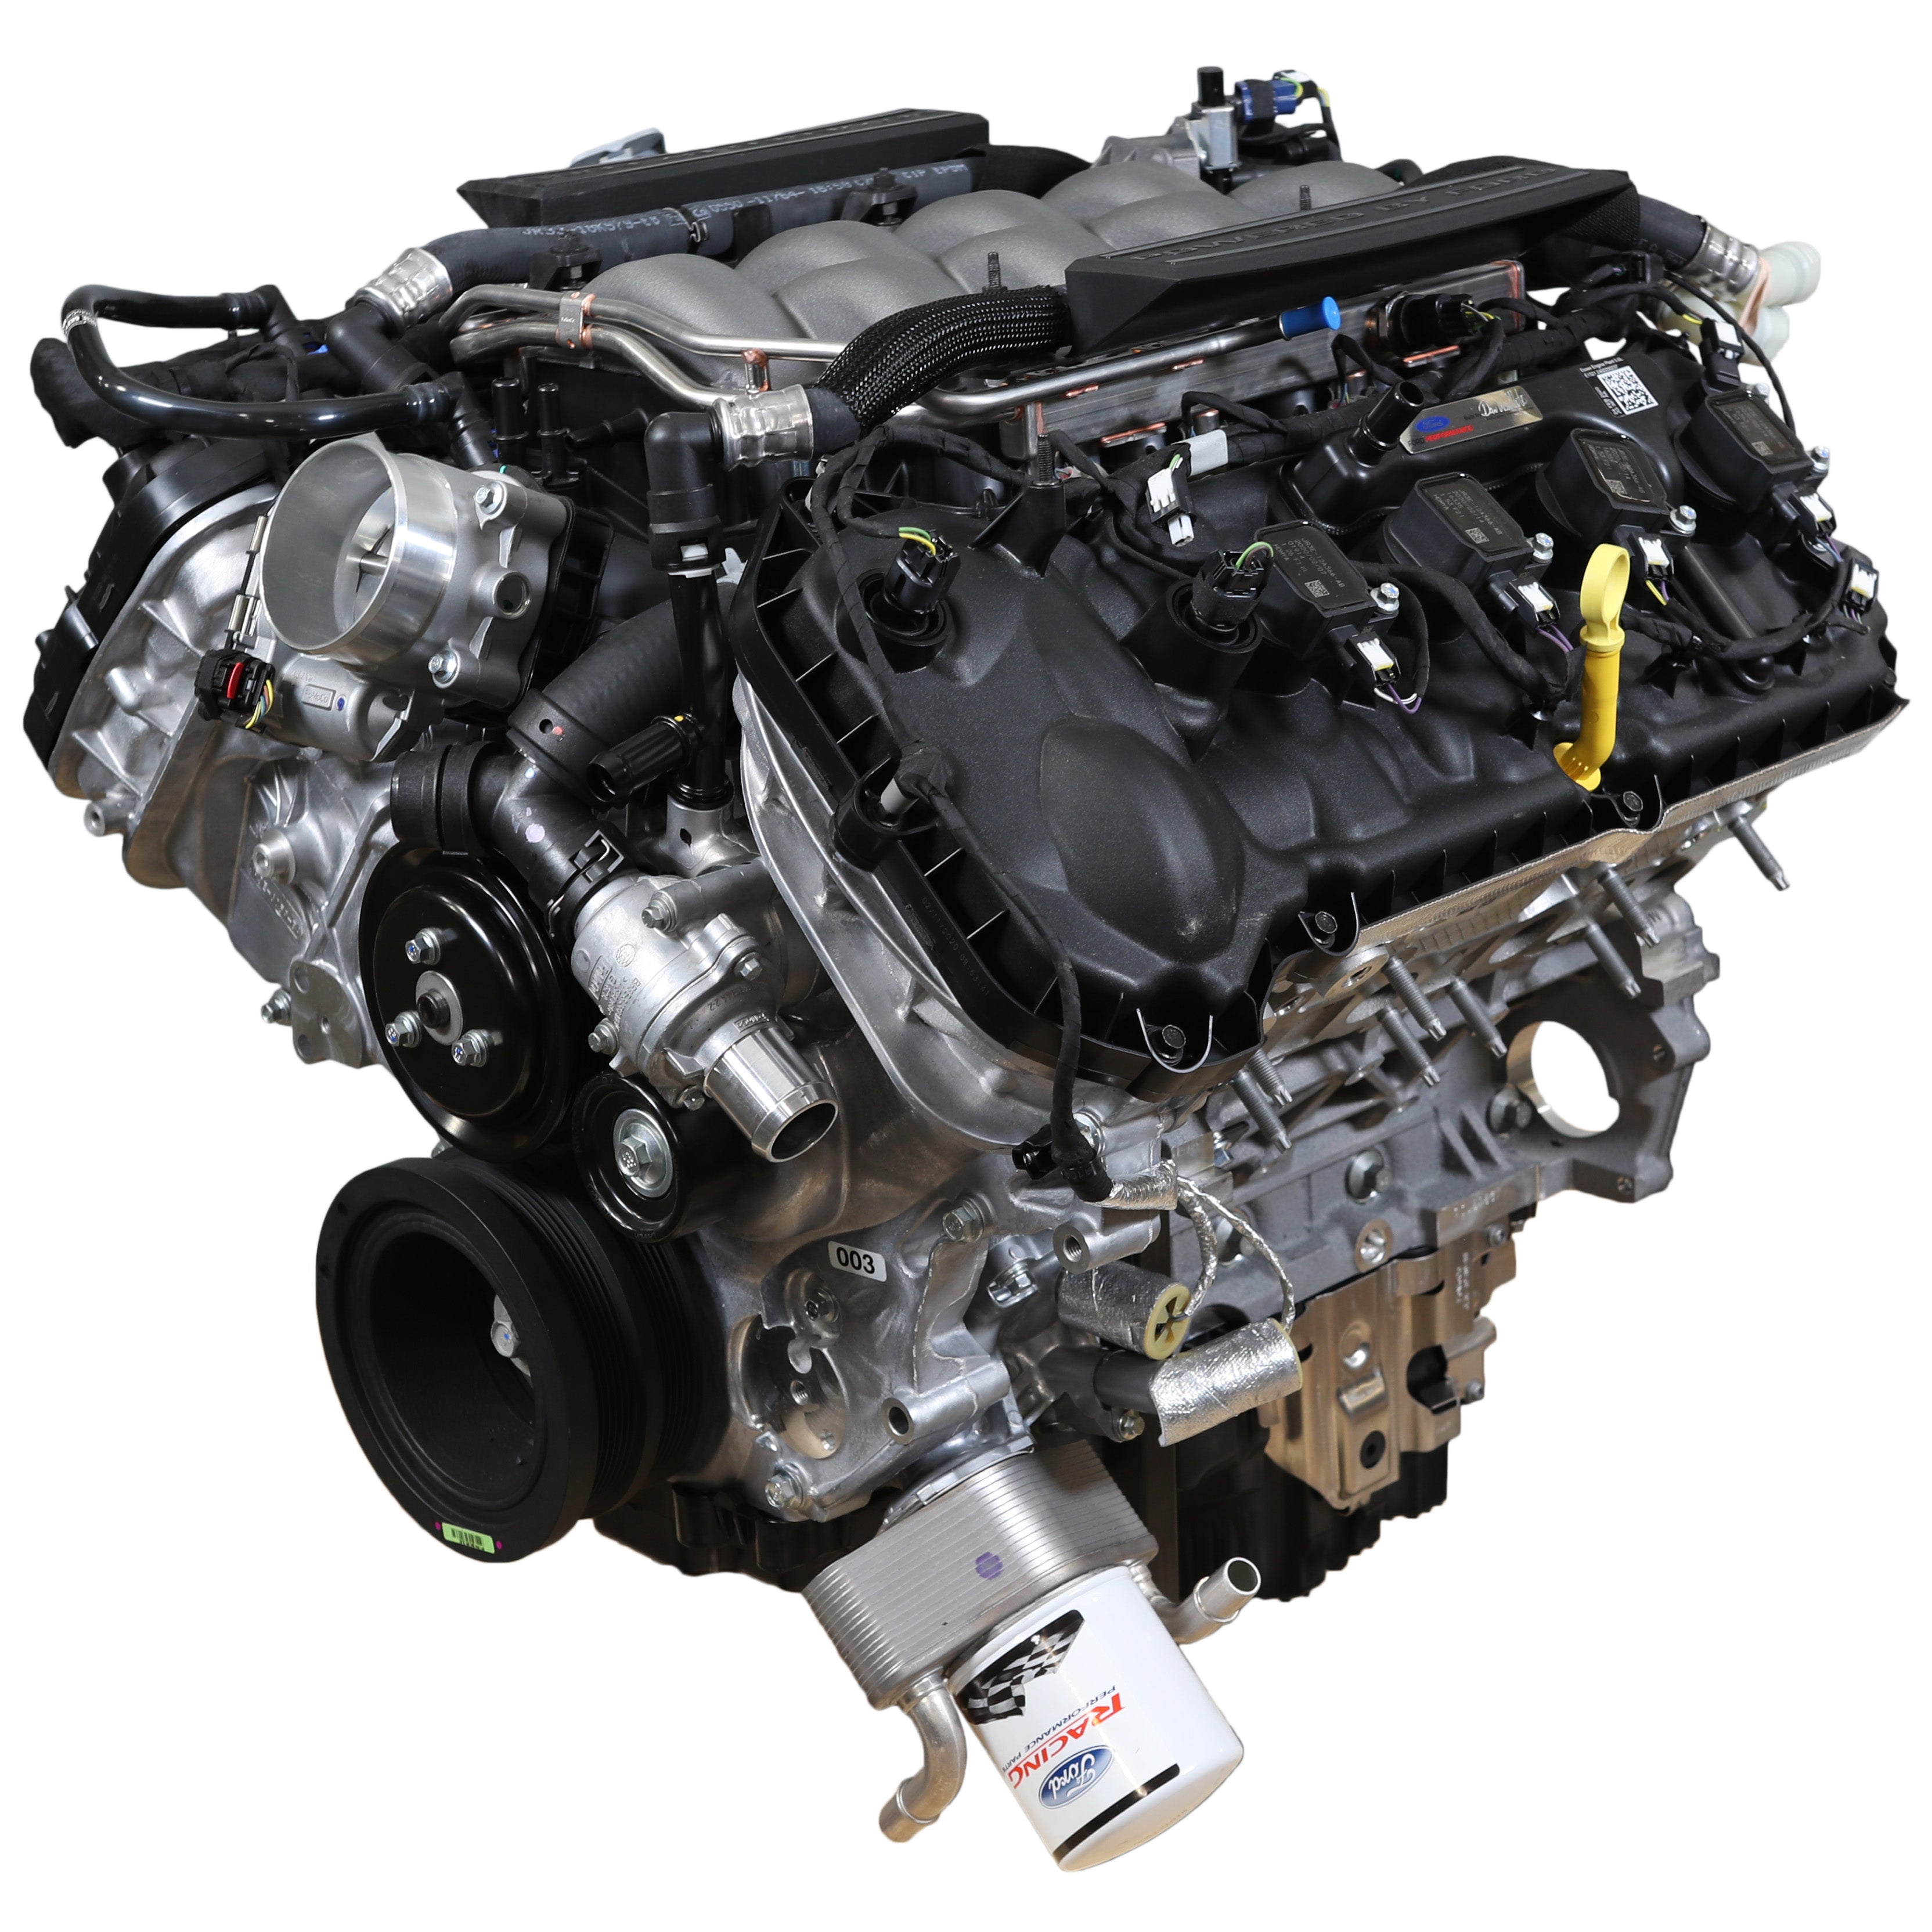 Silnik skrzyniowy Ford Performance 5.0L „Aluminator” Gen 3 — niska kompresja dla konstrukcji FI